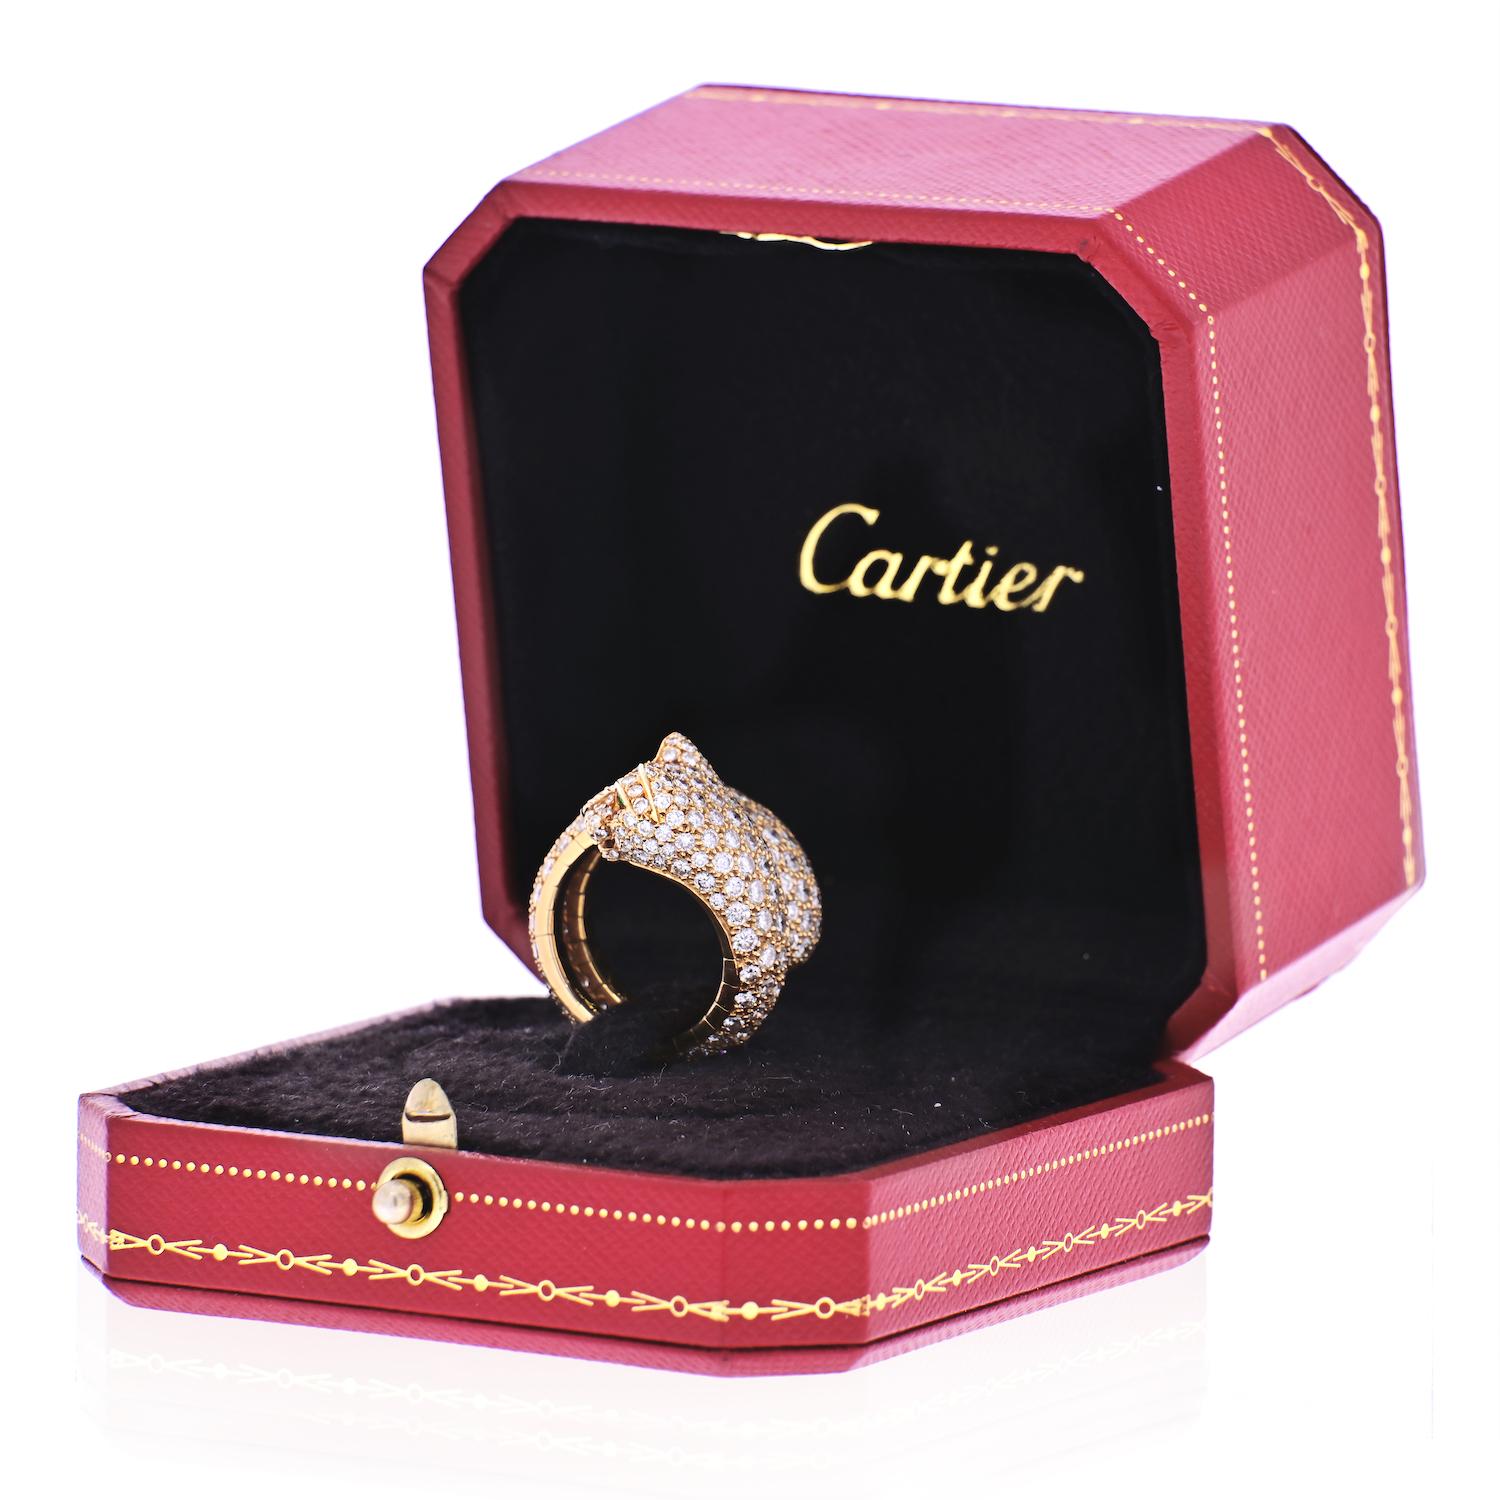 Voici le summum de l'élégance : la magnifique bague Carter Panther Lakarda vintage. Ornée d'environ 6,5 carats de diamants pavés, cette bague respire l'opulence et la sophistication. Son mécanisme à ressort unique ajoute une touche de polyvalence,